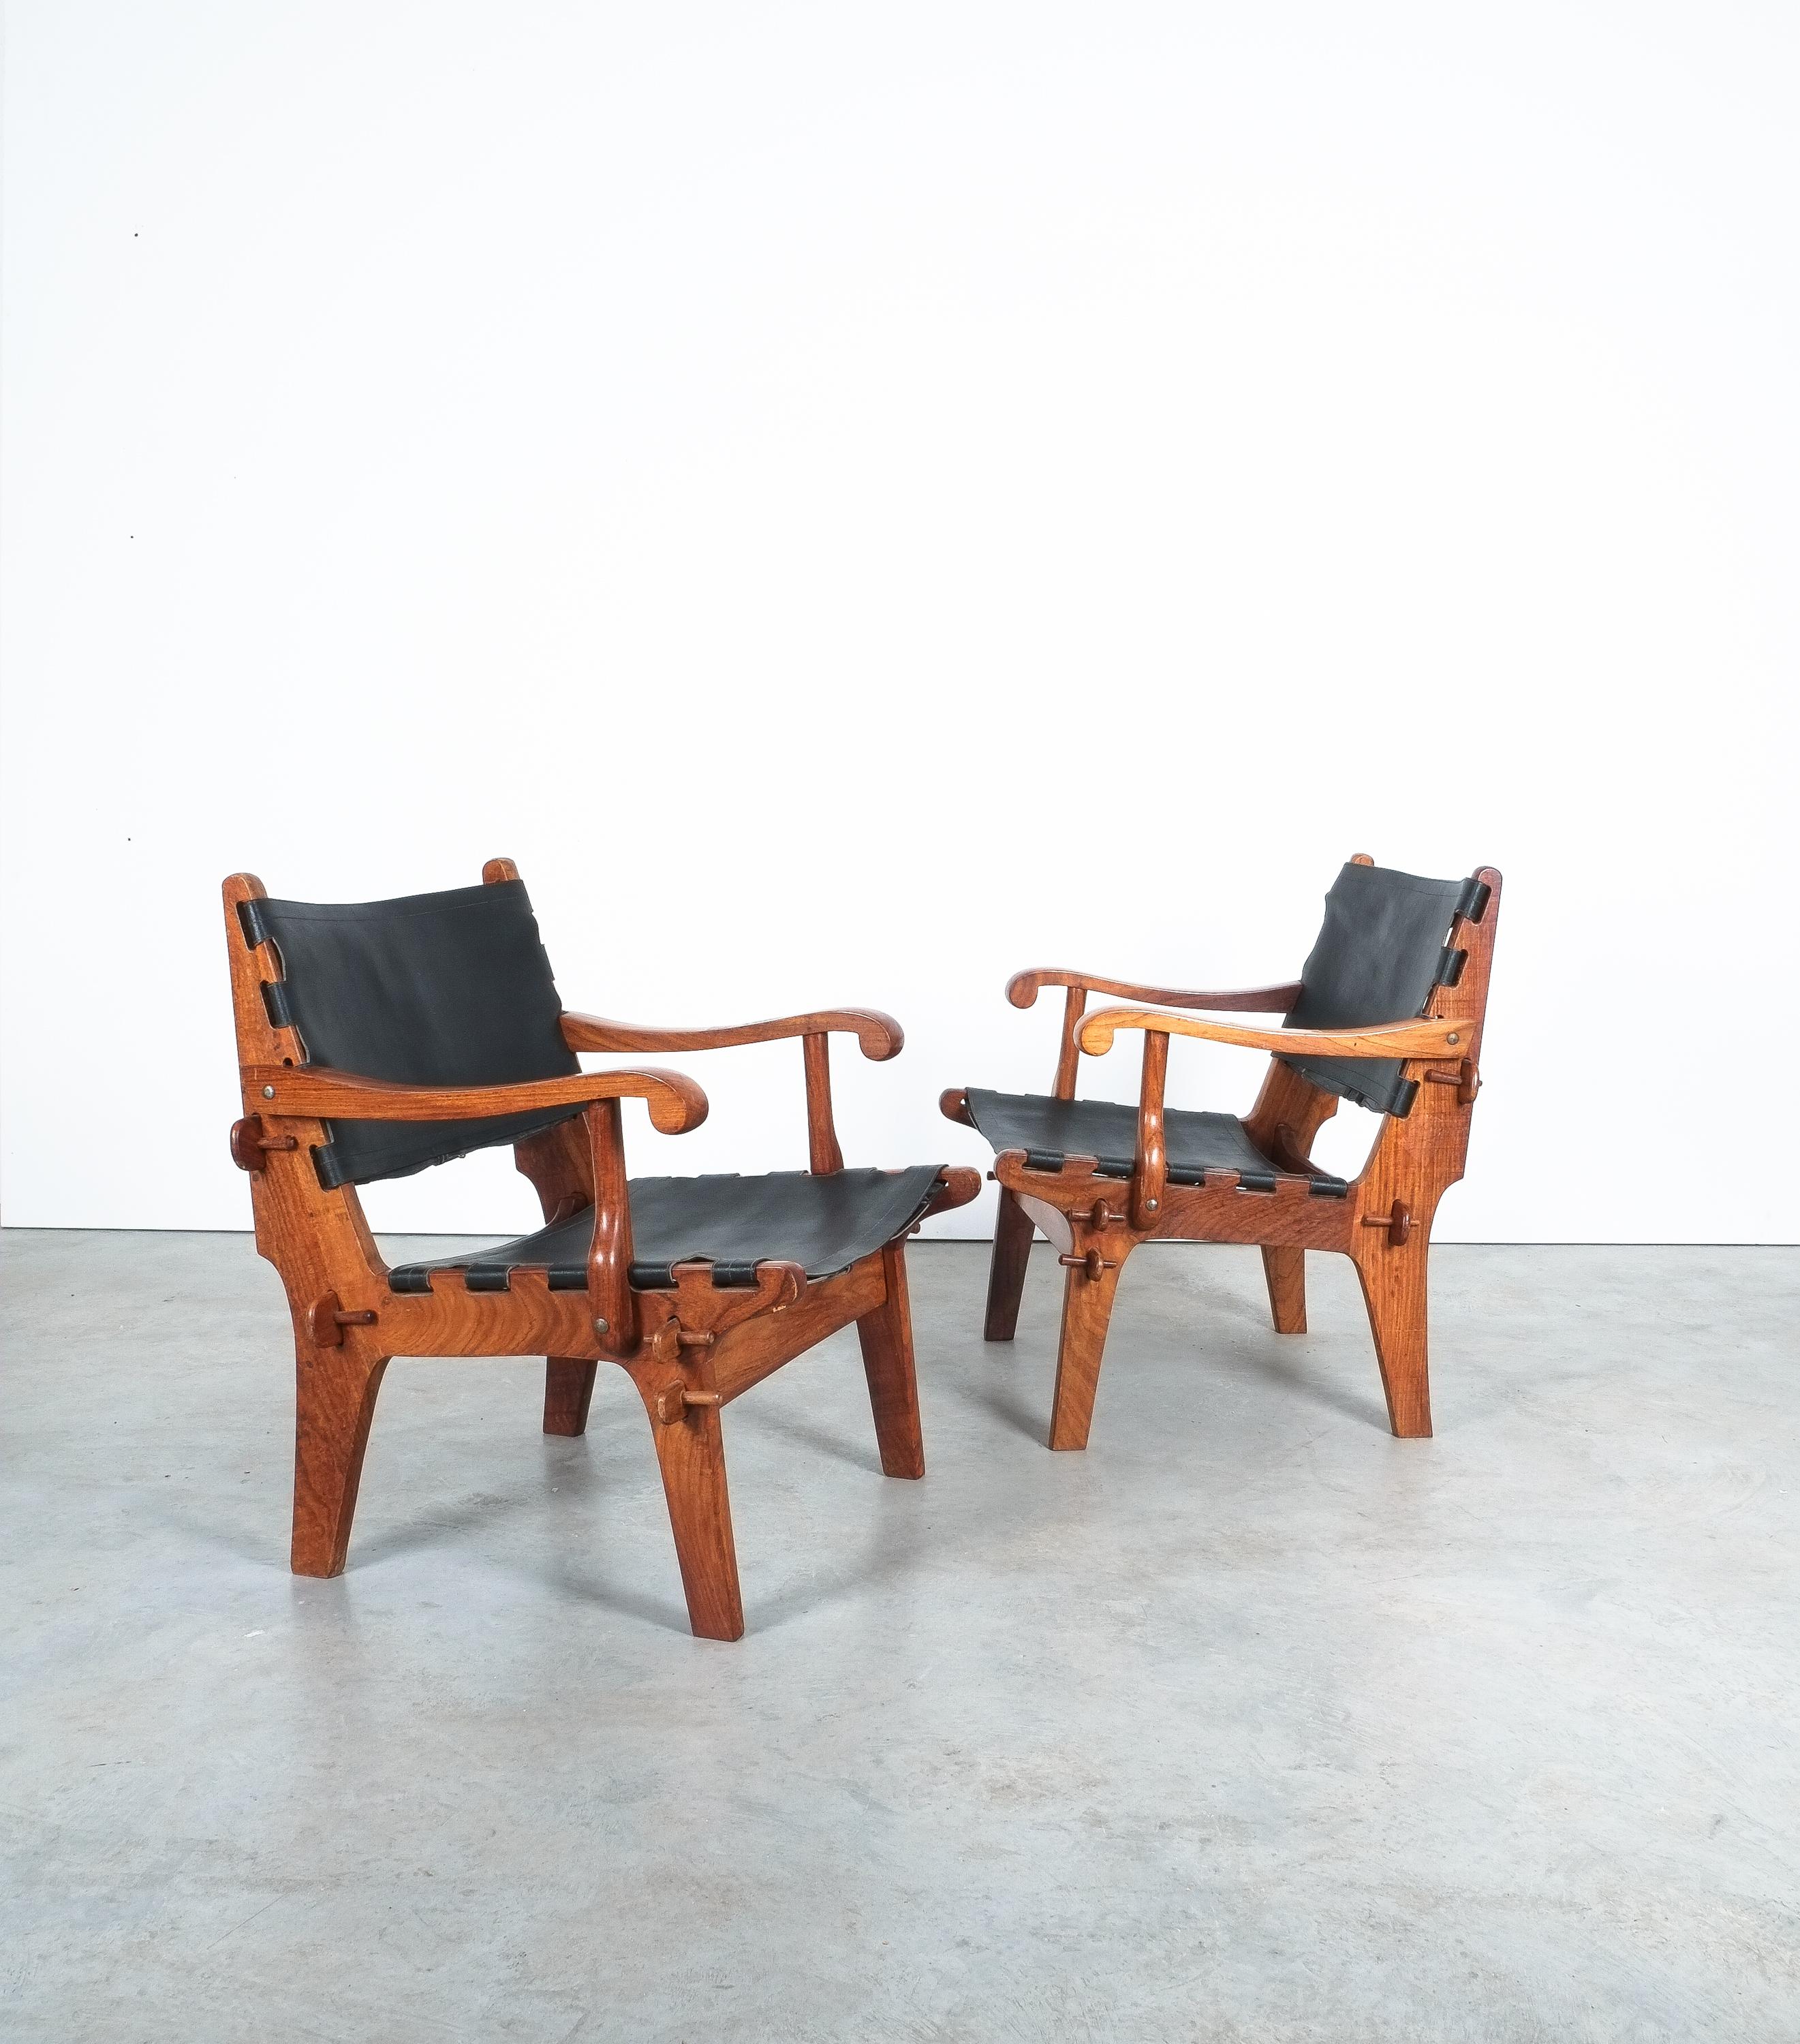 Paire de fauteuils de salon conçus dans les années 1960 par Angel I+I. Pazmino et fabriqués par Muebles de Estilo en Équateur.

Une superbe et rare paire de chaises safari vintage en palissandre massif et cuir. Le designer équatorien Angel Pazmino a